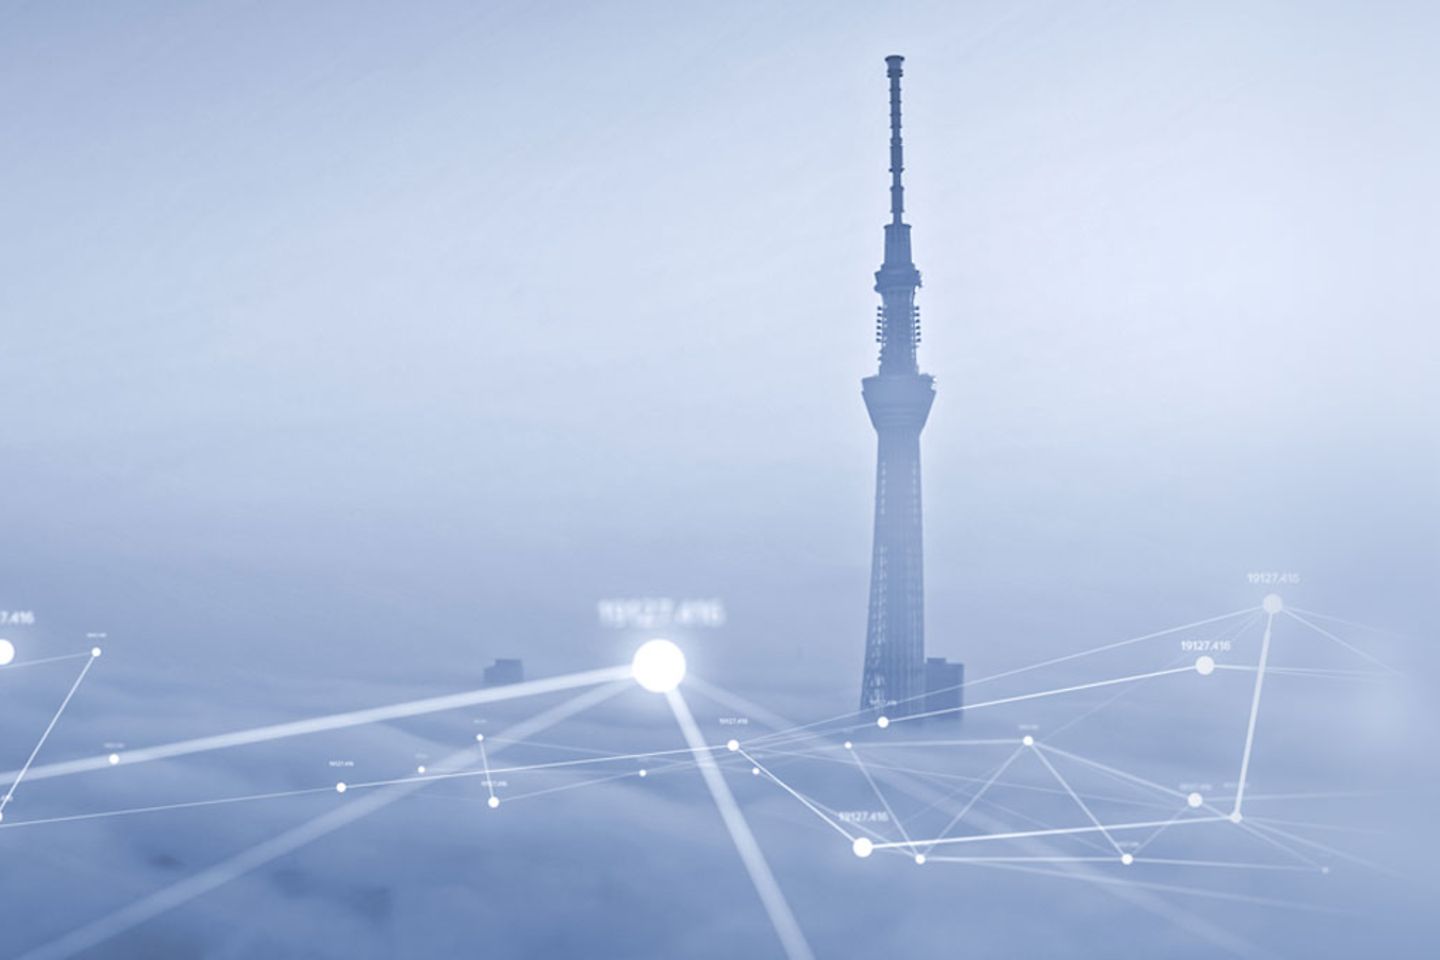 Torre de Tóquio nas nuvens com rede